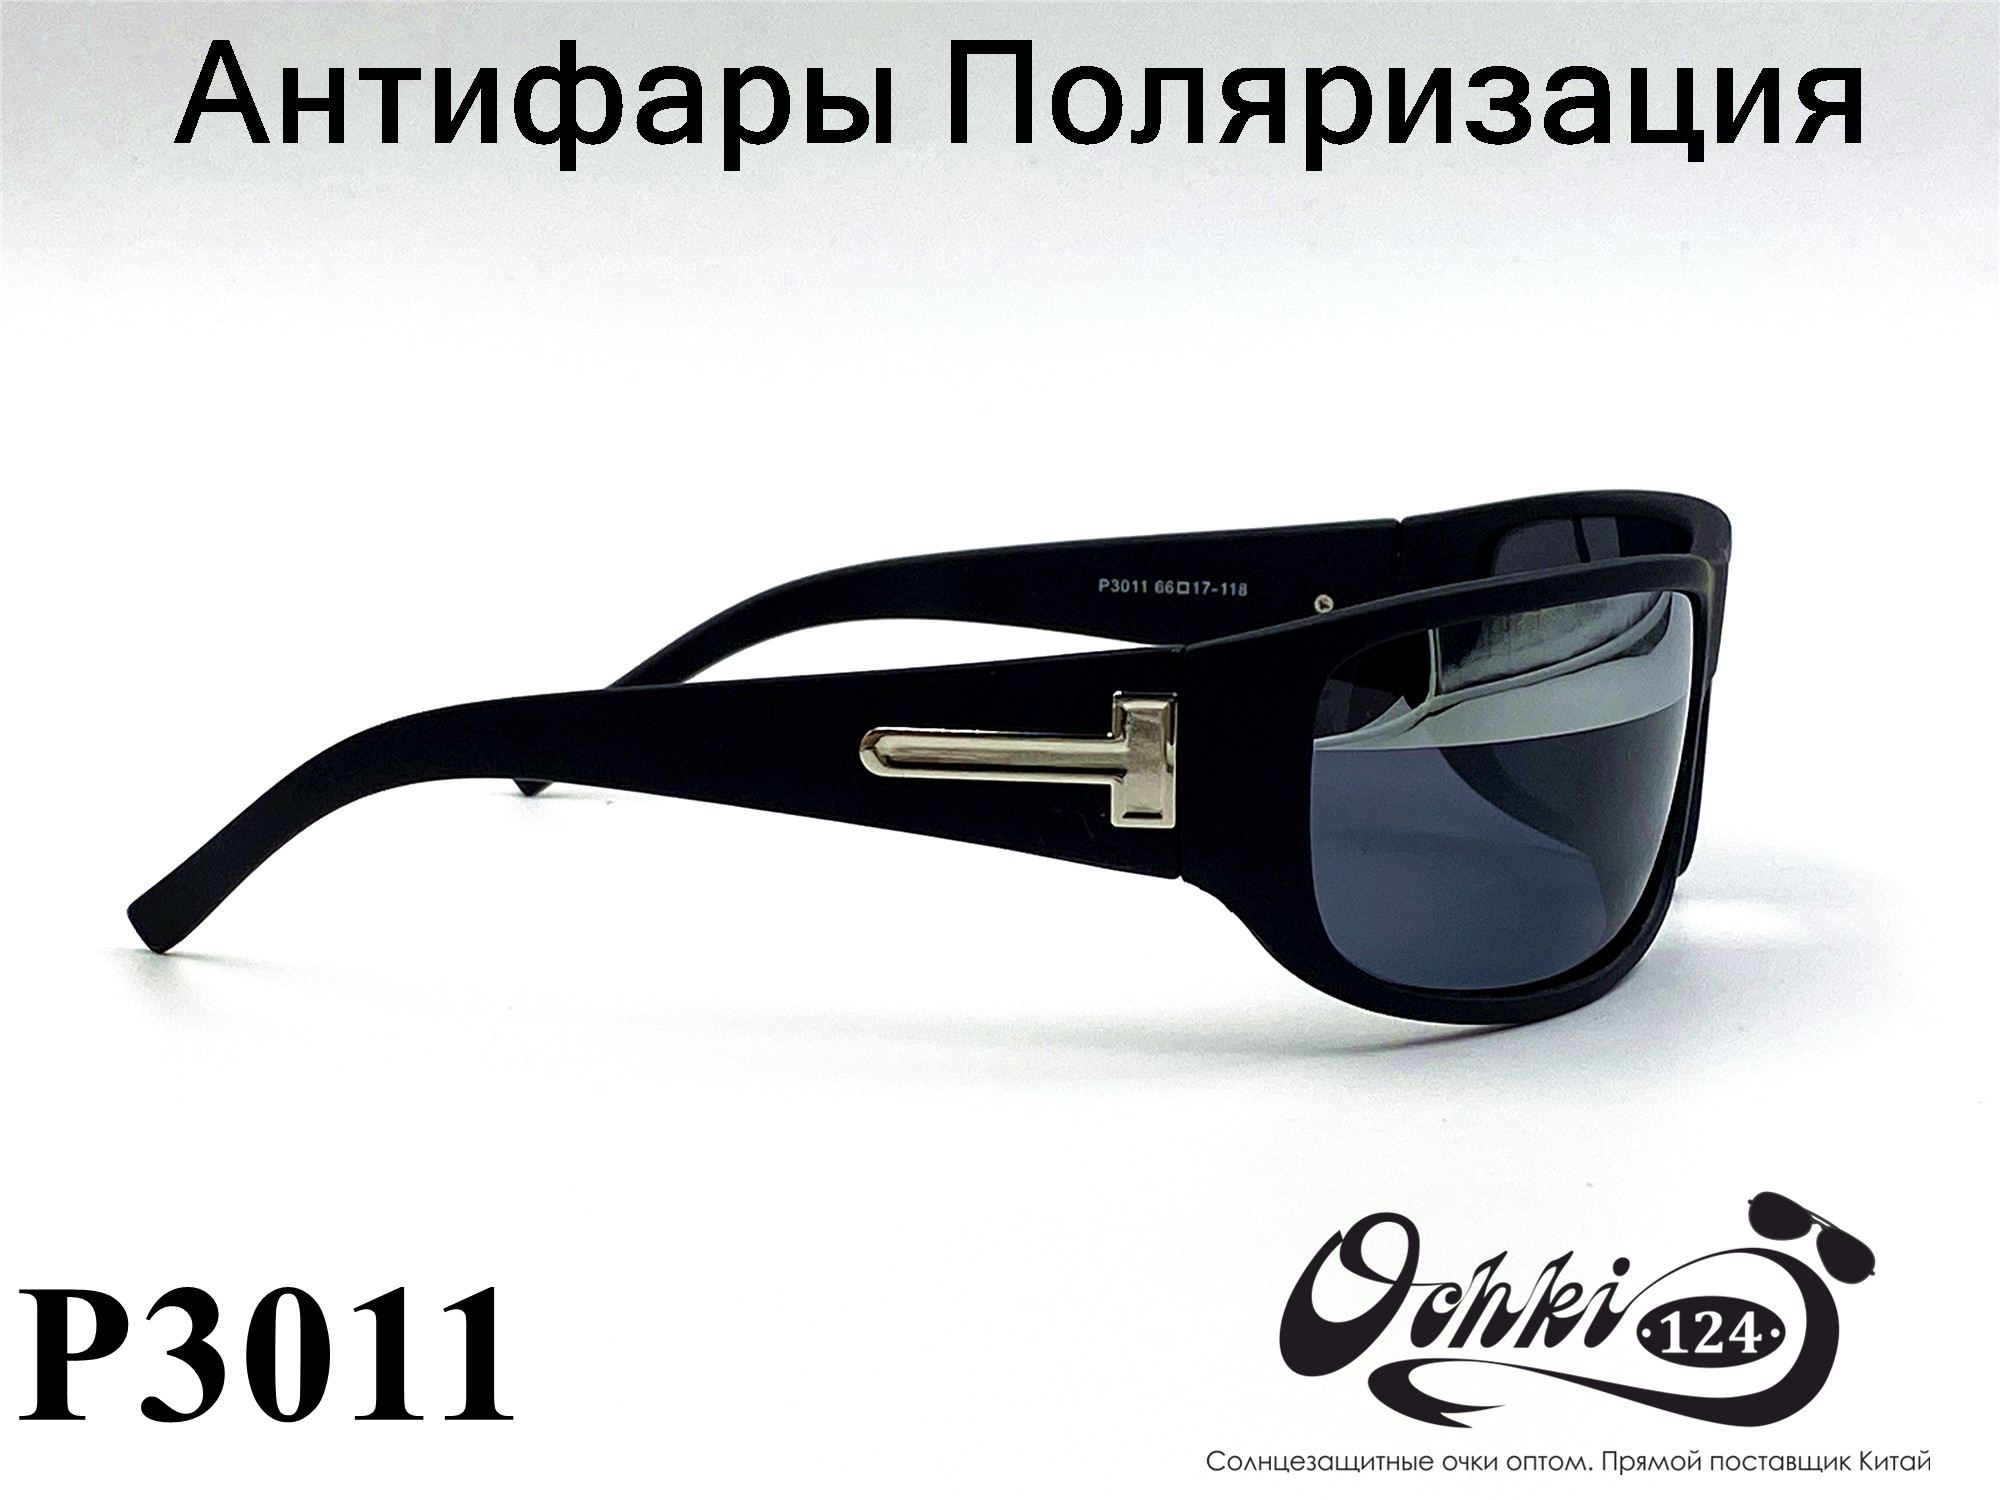  Солнцезащитные очки картинка 2022 Мужские антифары-спорт, с зеркальной полосой, Черный Polarized P3011-2 